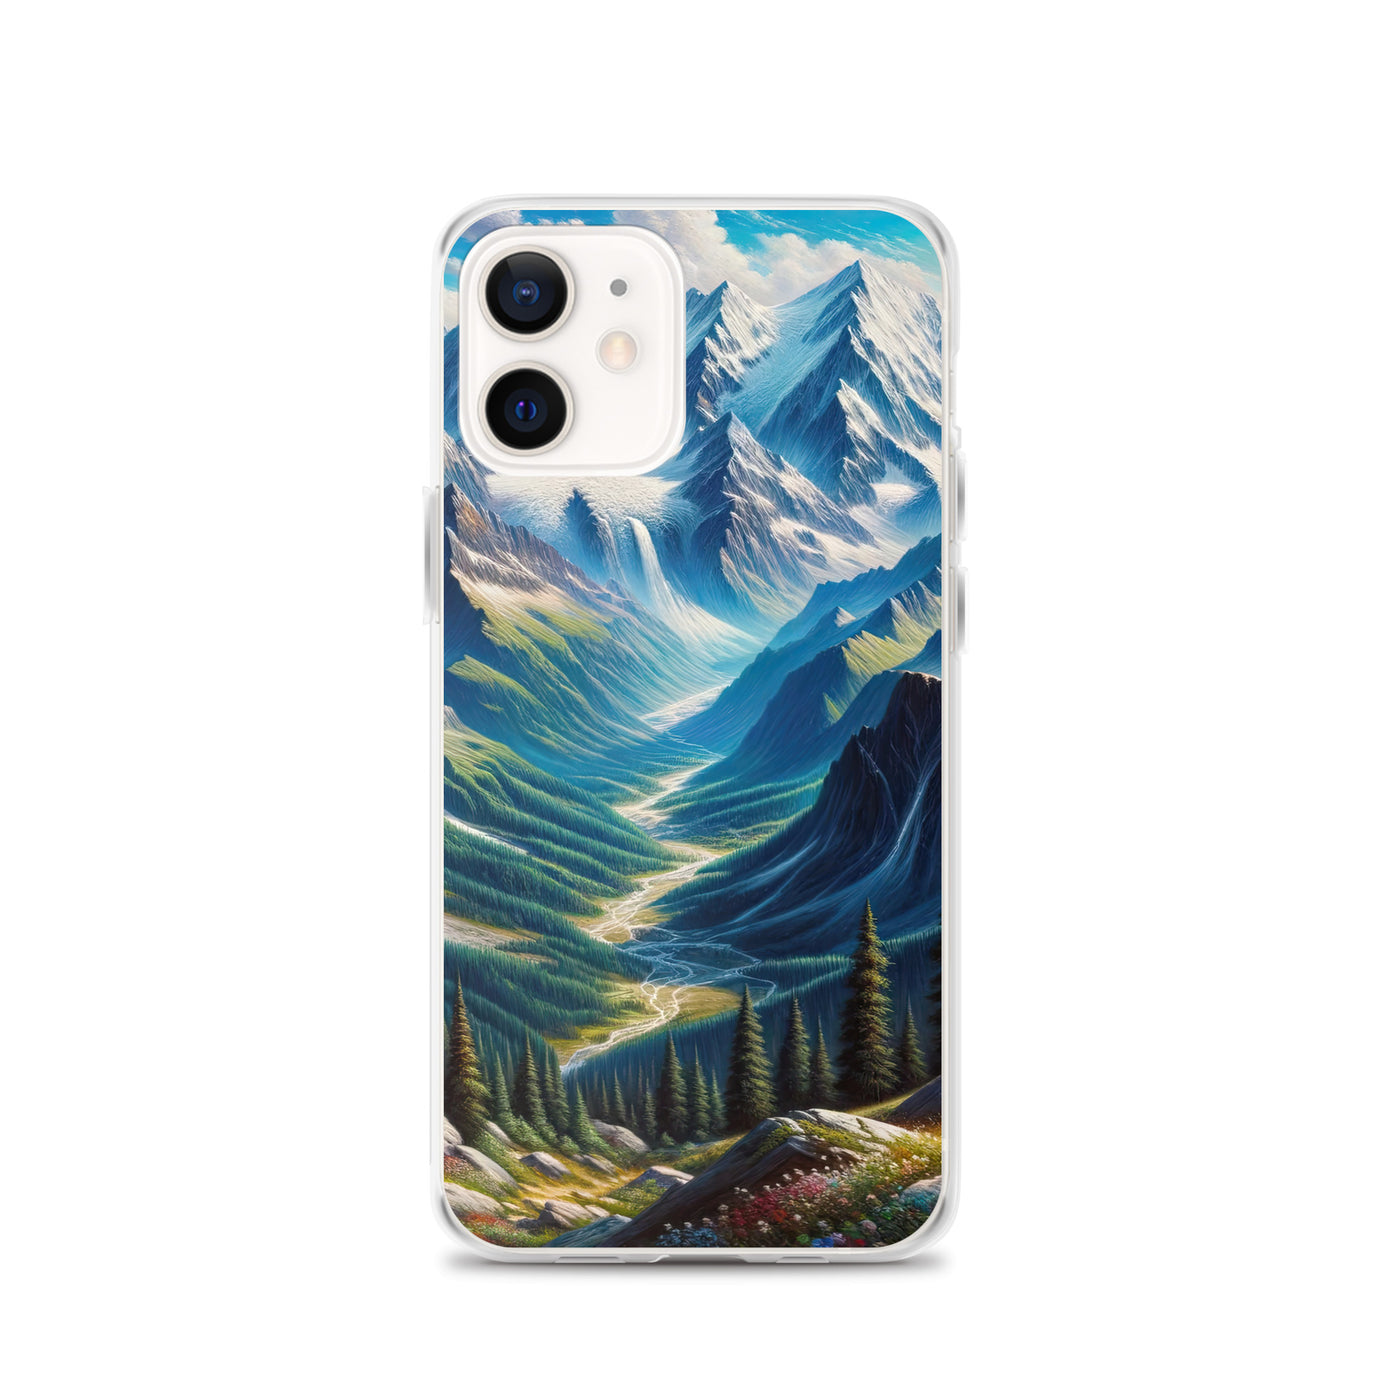 Panorama-Ölgemälde der Alpen mit schneebedeckten Gipfeln und schlängelnden Flusstälern - iPhone Schutzhülle (durchsichtig) berge xxx yyy zzz iPhone 12